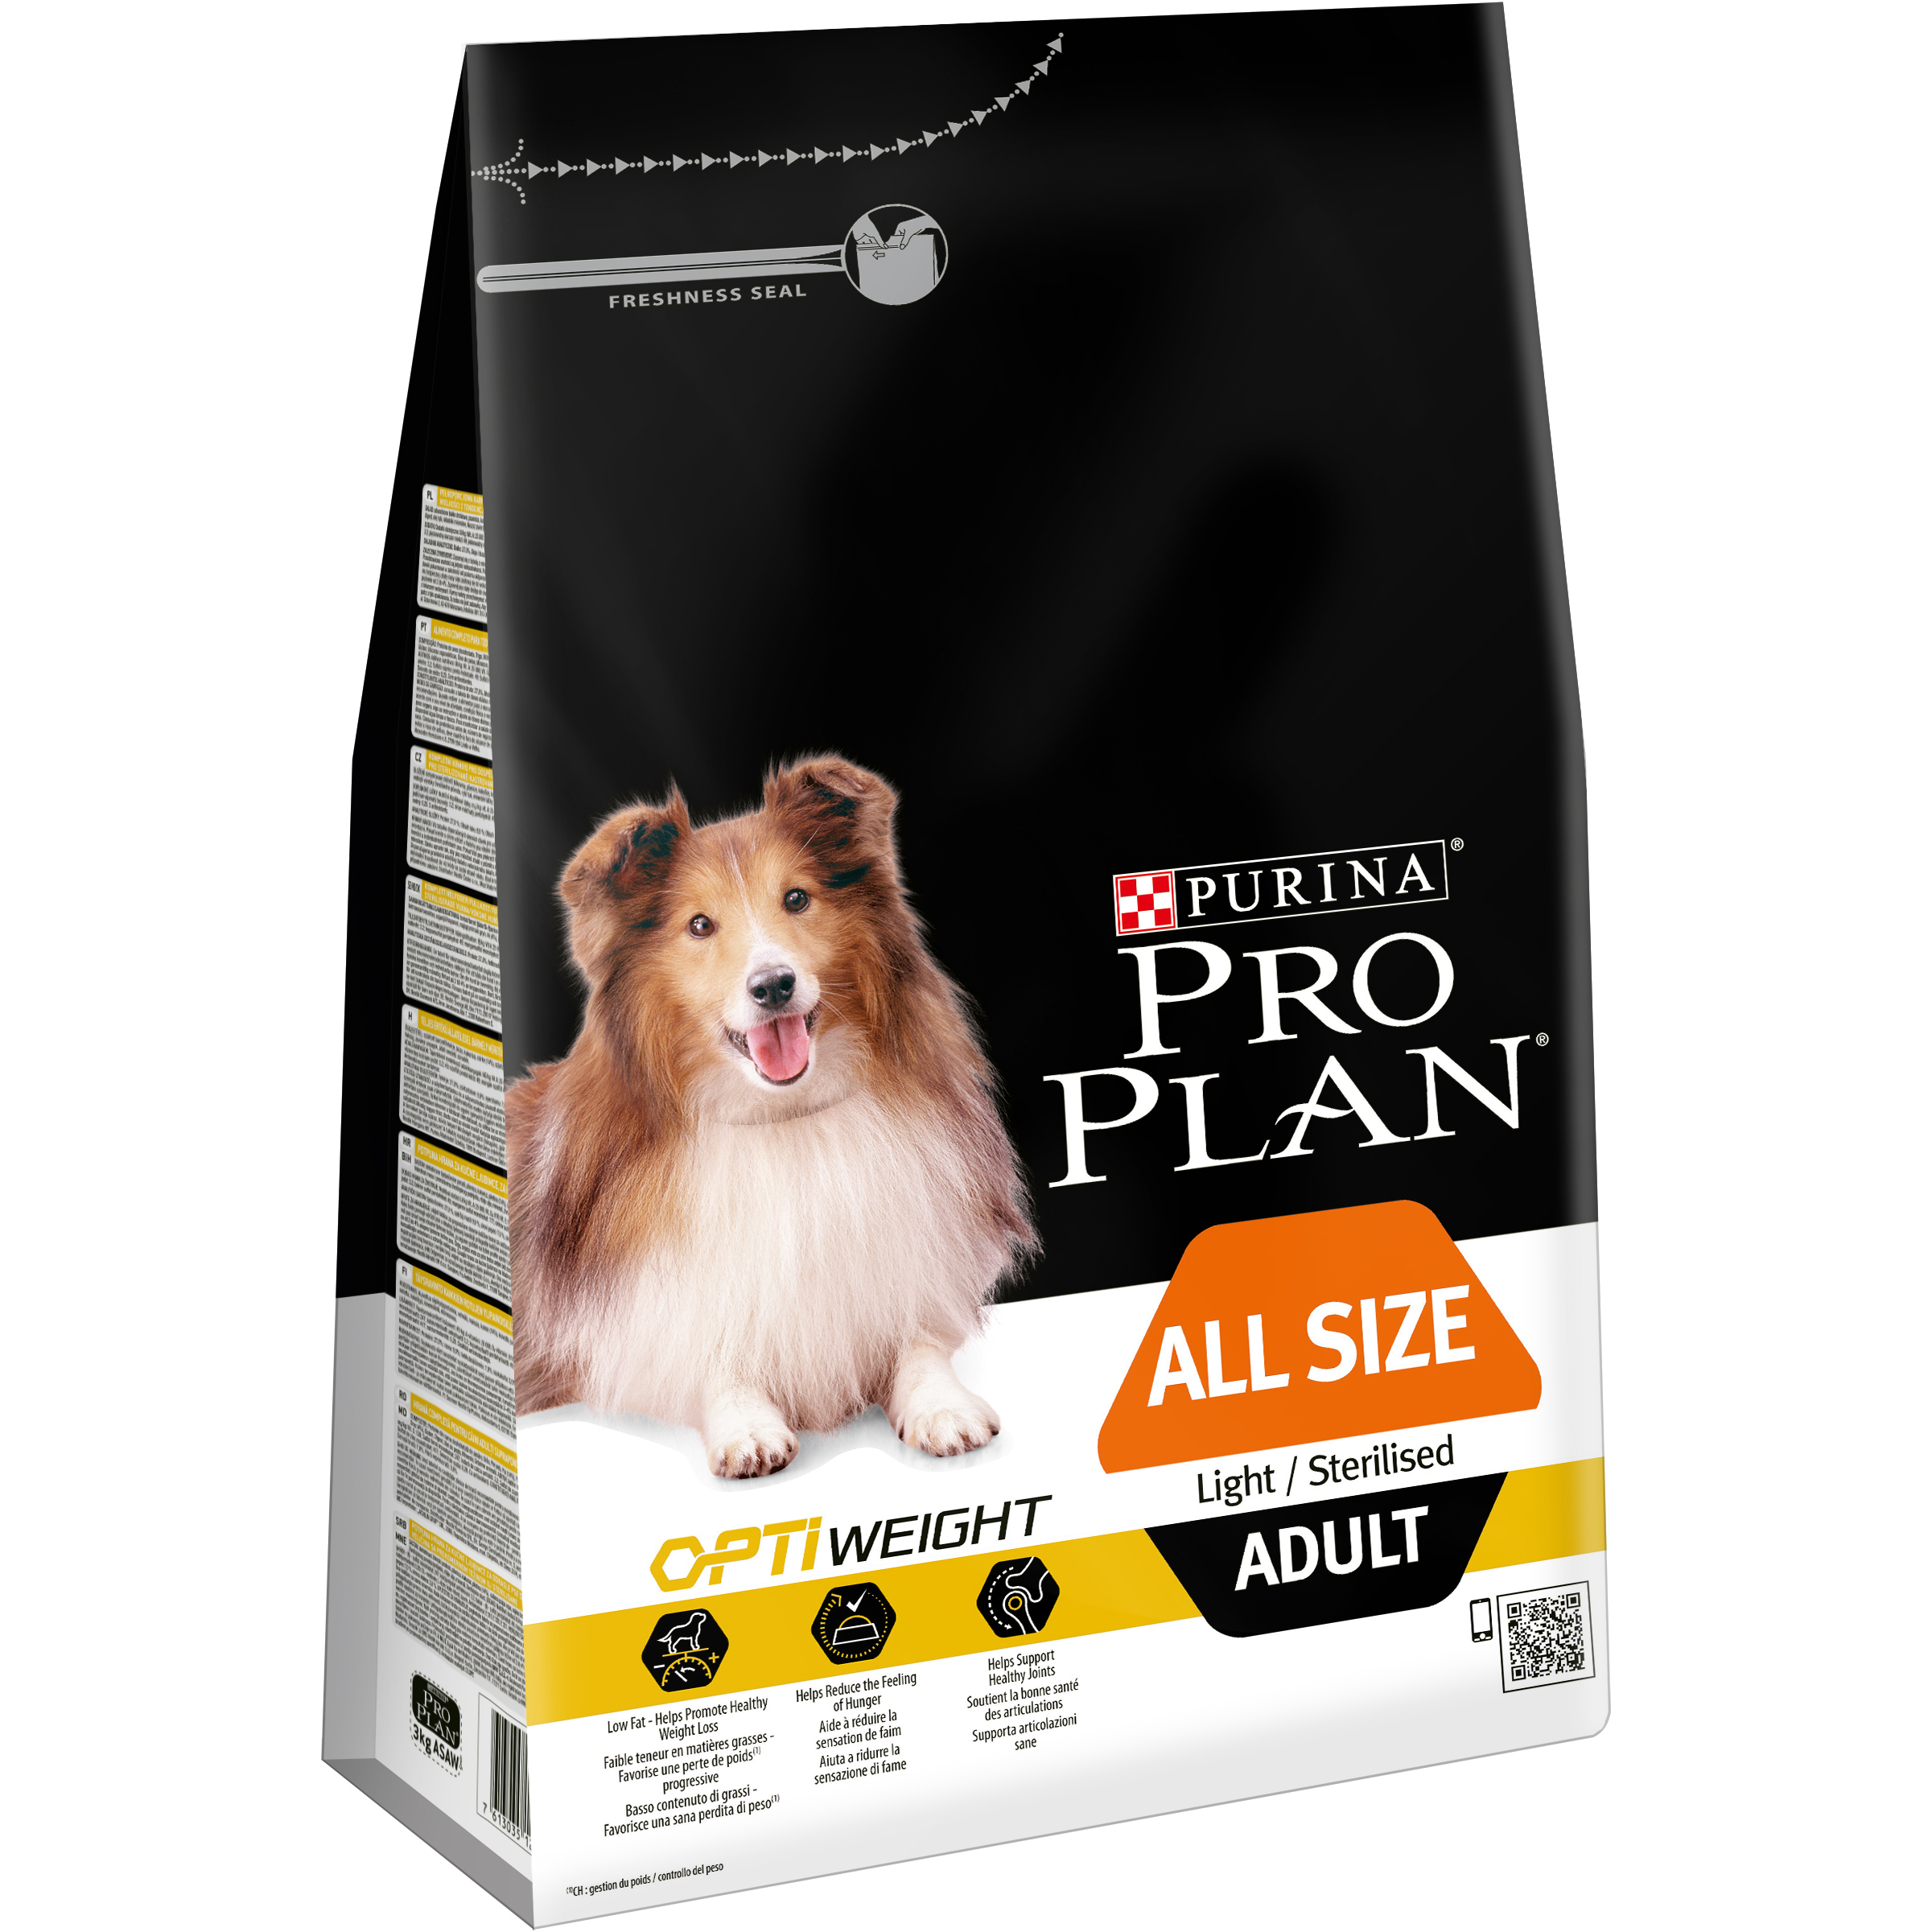 Сухие корма для собак магазин. Pro Plan Light Sterilised OPTIWEIGHT для собака. Purina Pro Plan корм Purina Pro Plan. Pro Plan OPTIWEIGHT для собак. Сухой корм для собак Pro Plan Opti Weight.